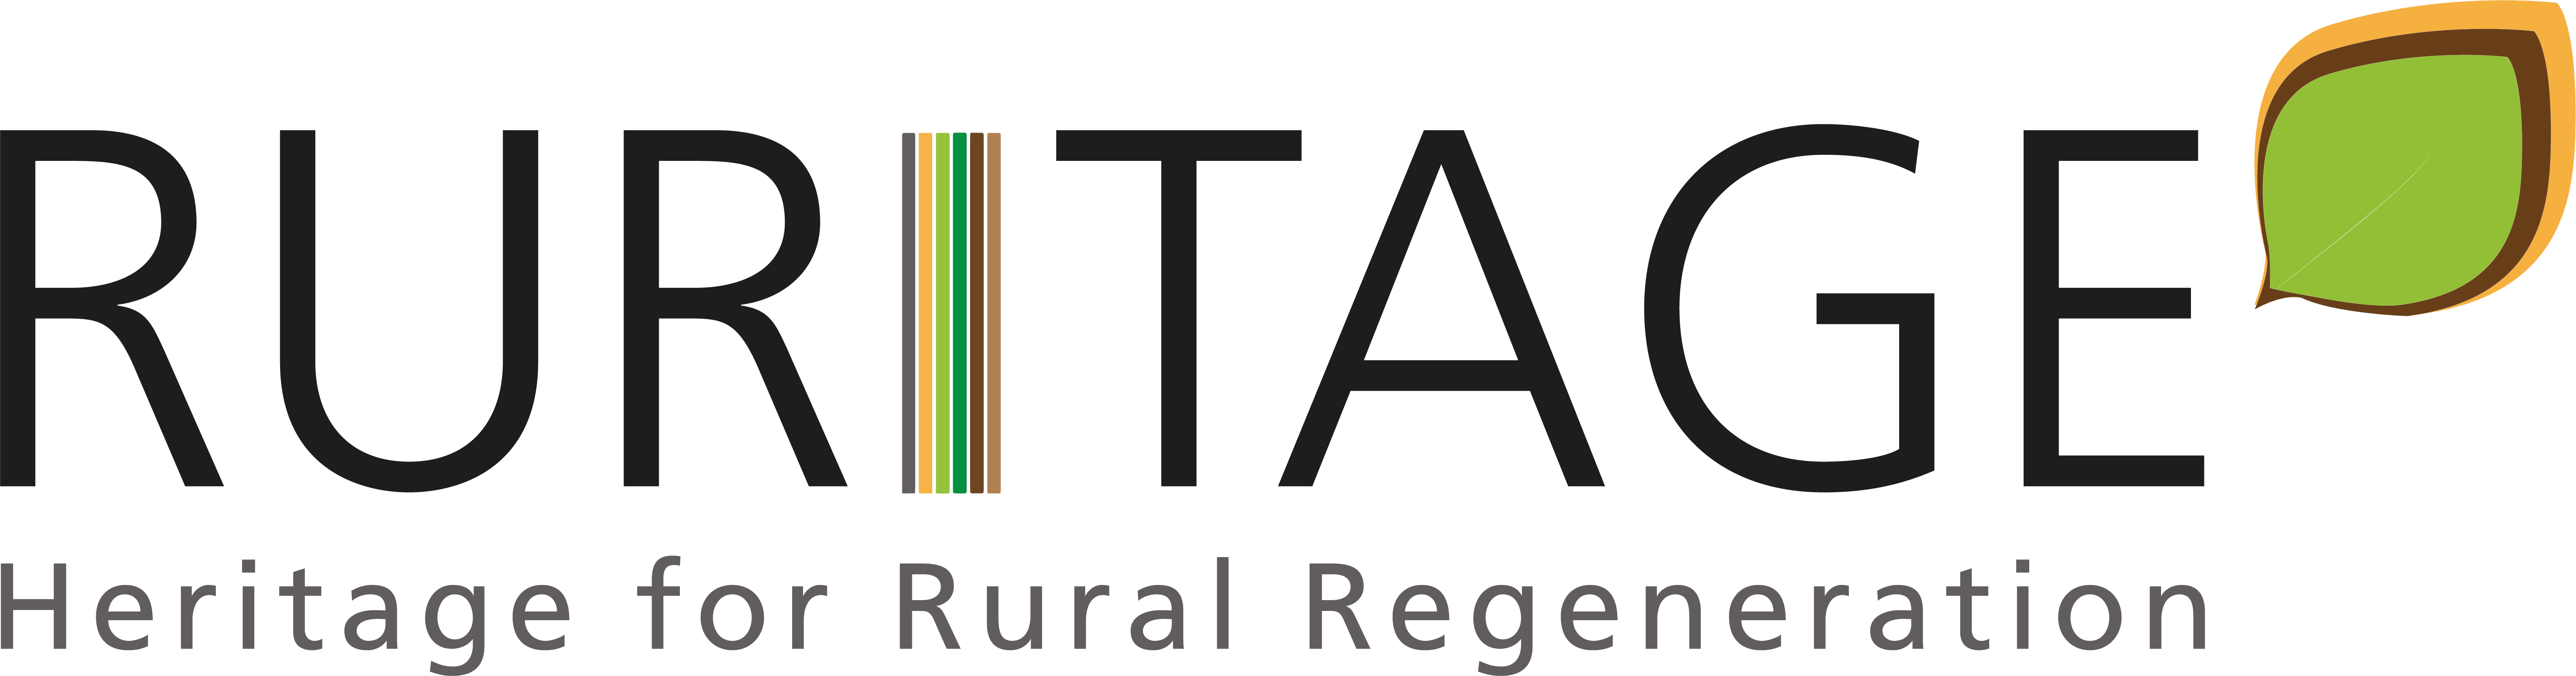 logo-Ruritage